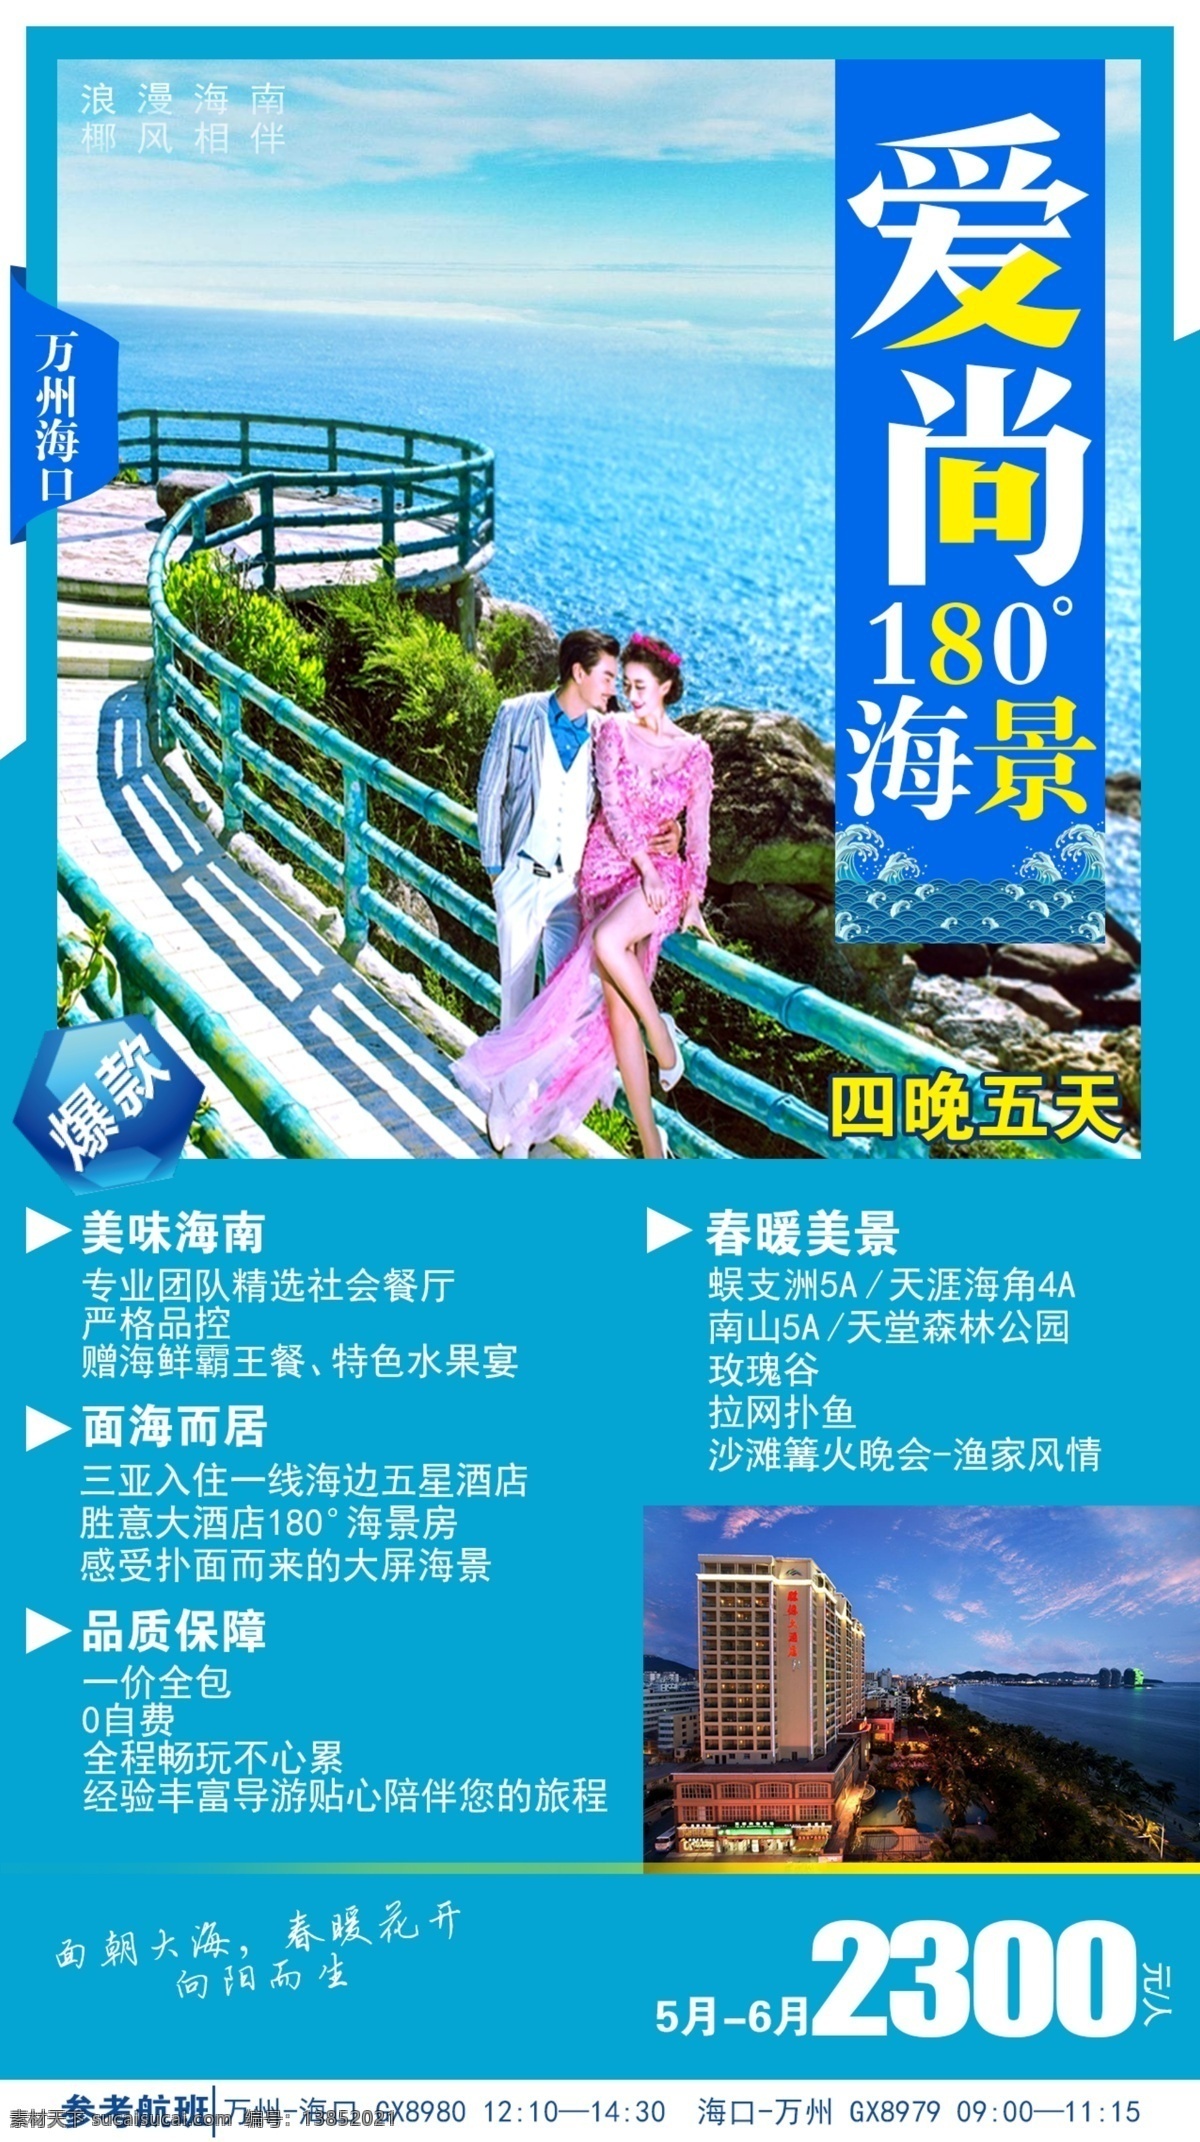 爱上海景 海南 三亚 海口 旅游 海边 海岛 行走 旅行 彩色 印刷 海报